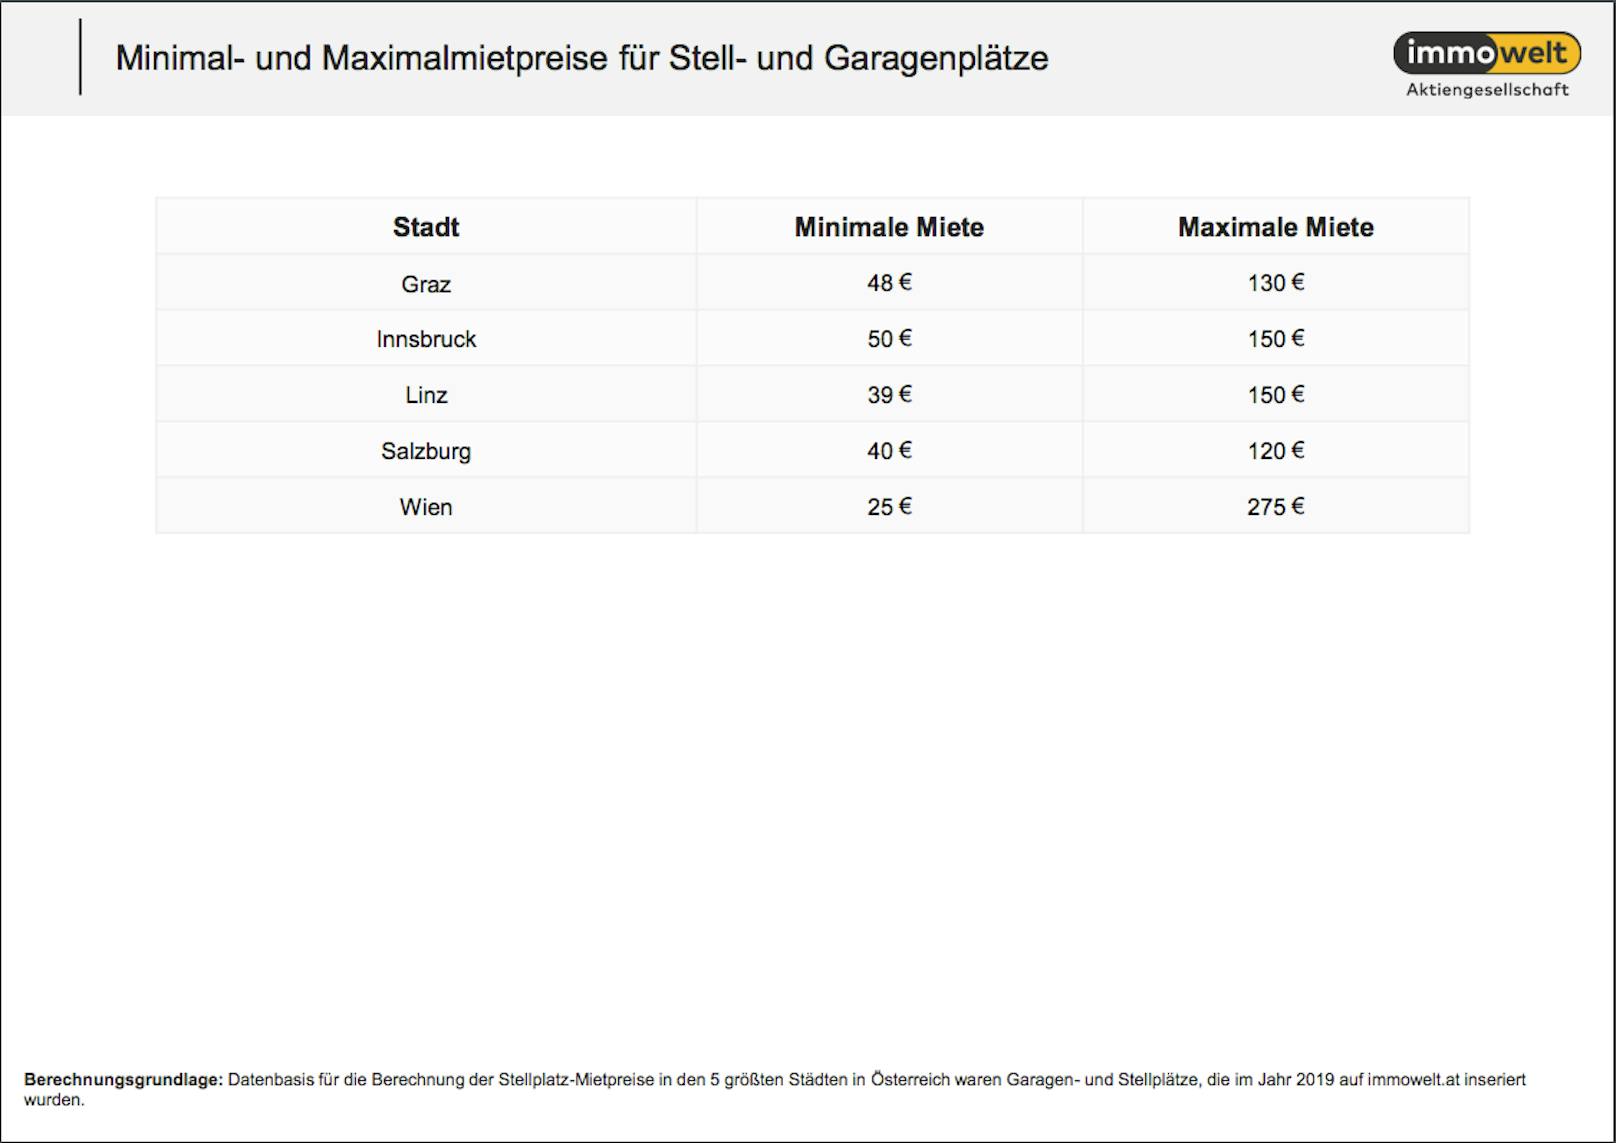 Minimal- und Maximalmietpreise für Stell- und Garagenplätze in österreichischen Städten im Überblick